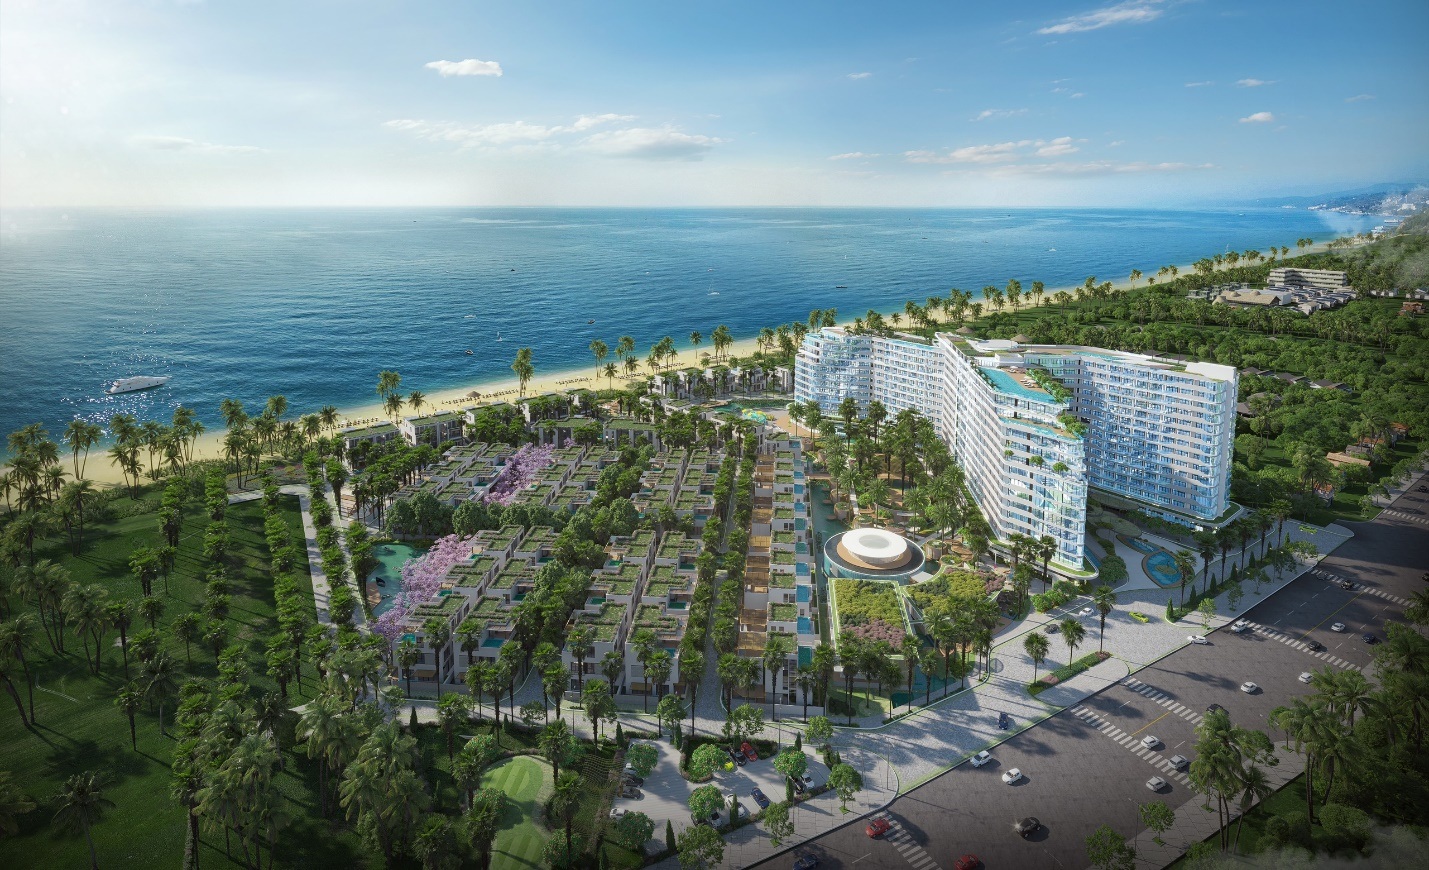 Tập trung nhiều dự án bất động sản, cung đường nghỉ dưỡng đang thành hình tại Hồ Tràm - 2